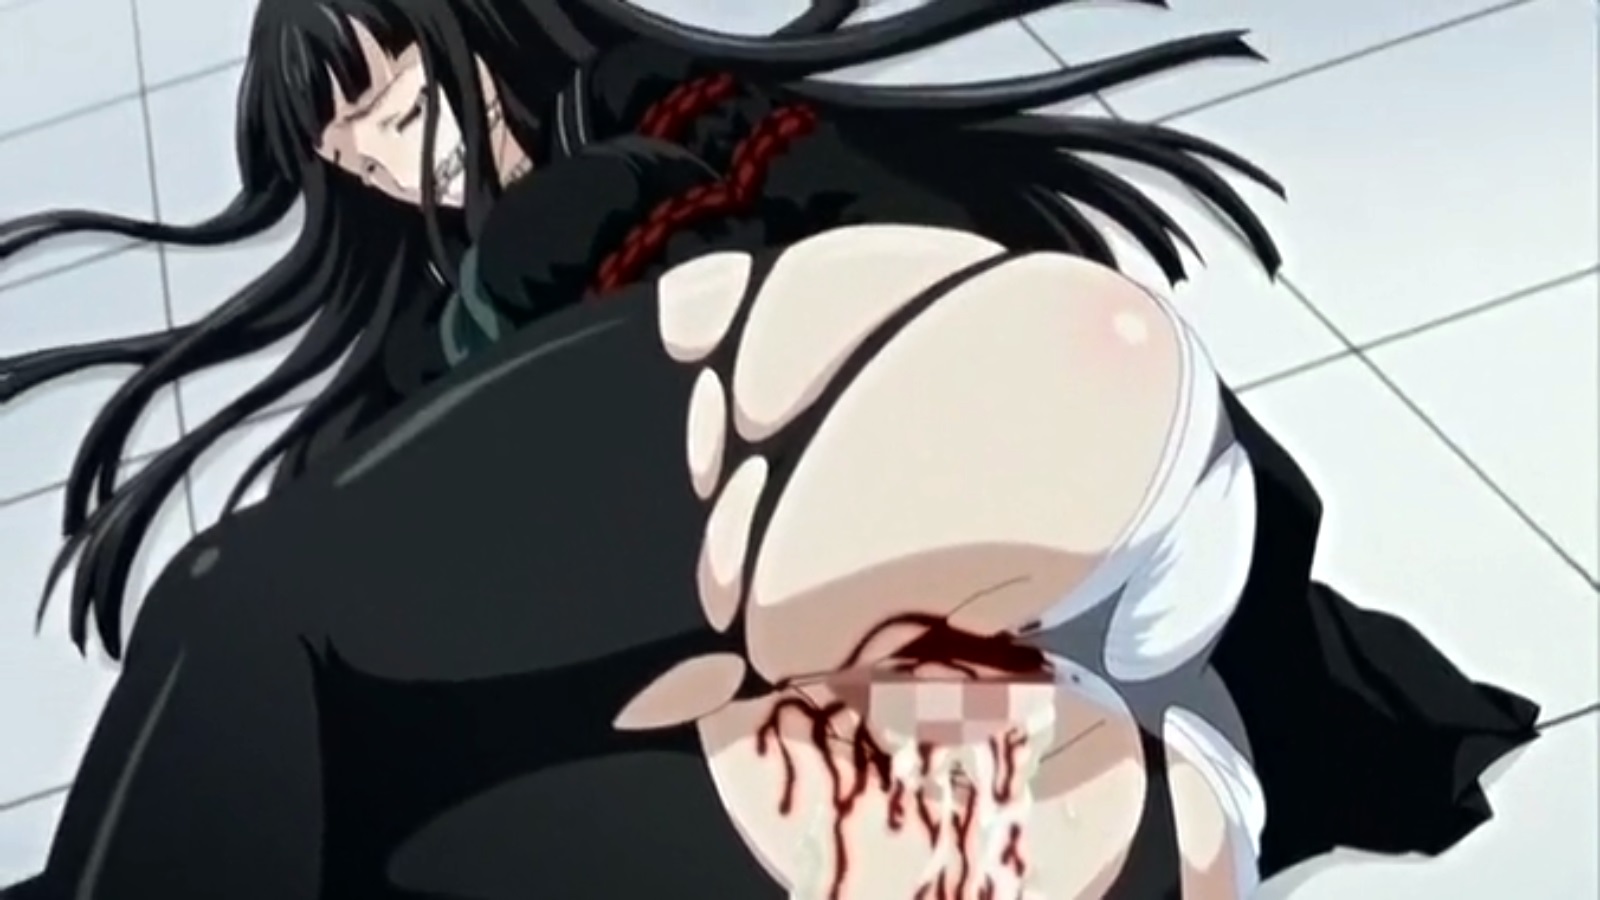 Extreme Tentacle Hentai Dvd - Brutal Hentai Movie Rape, Blood, Ache, Death | HentaiMovie.Tv